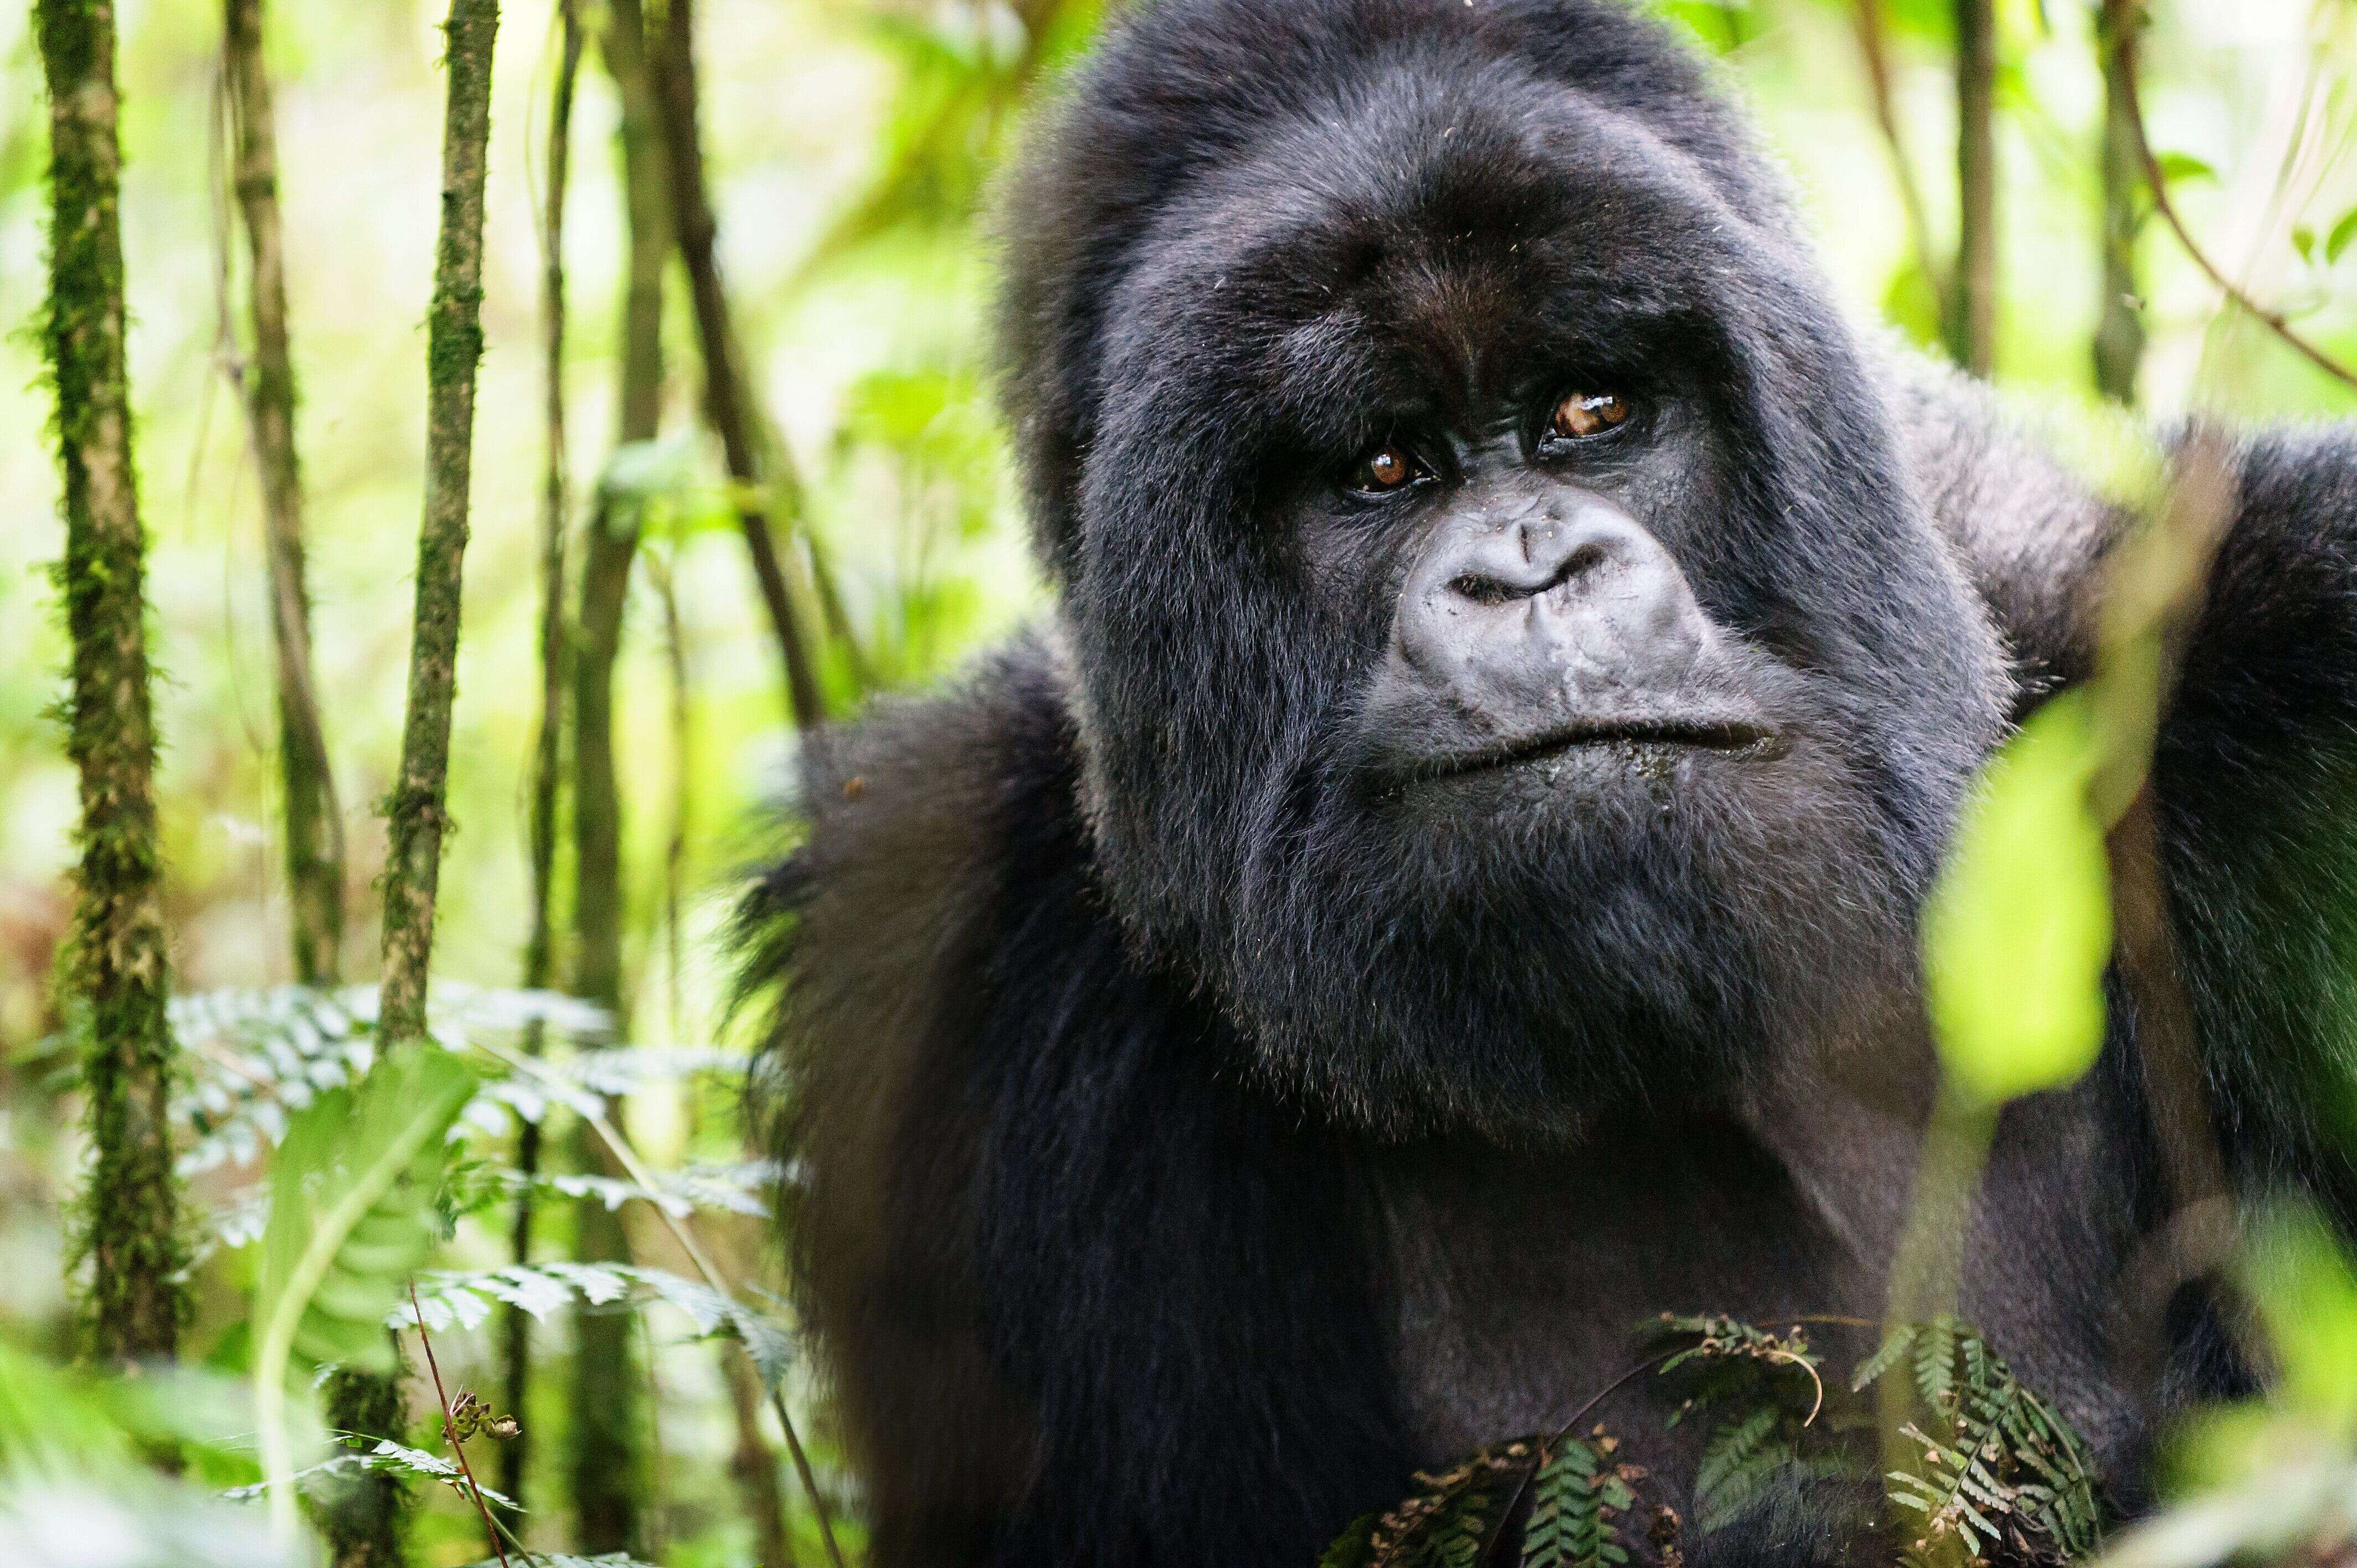 Très proches génétiquement de l'homme, les gorilles peuvent également contracter le coronavirus.